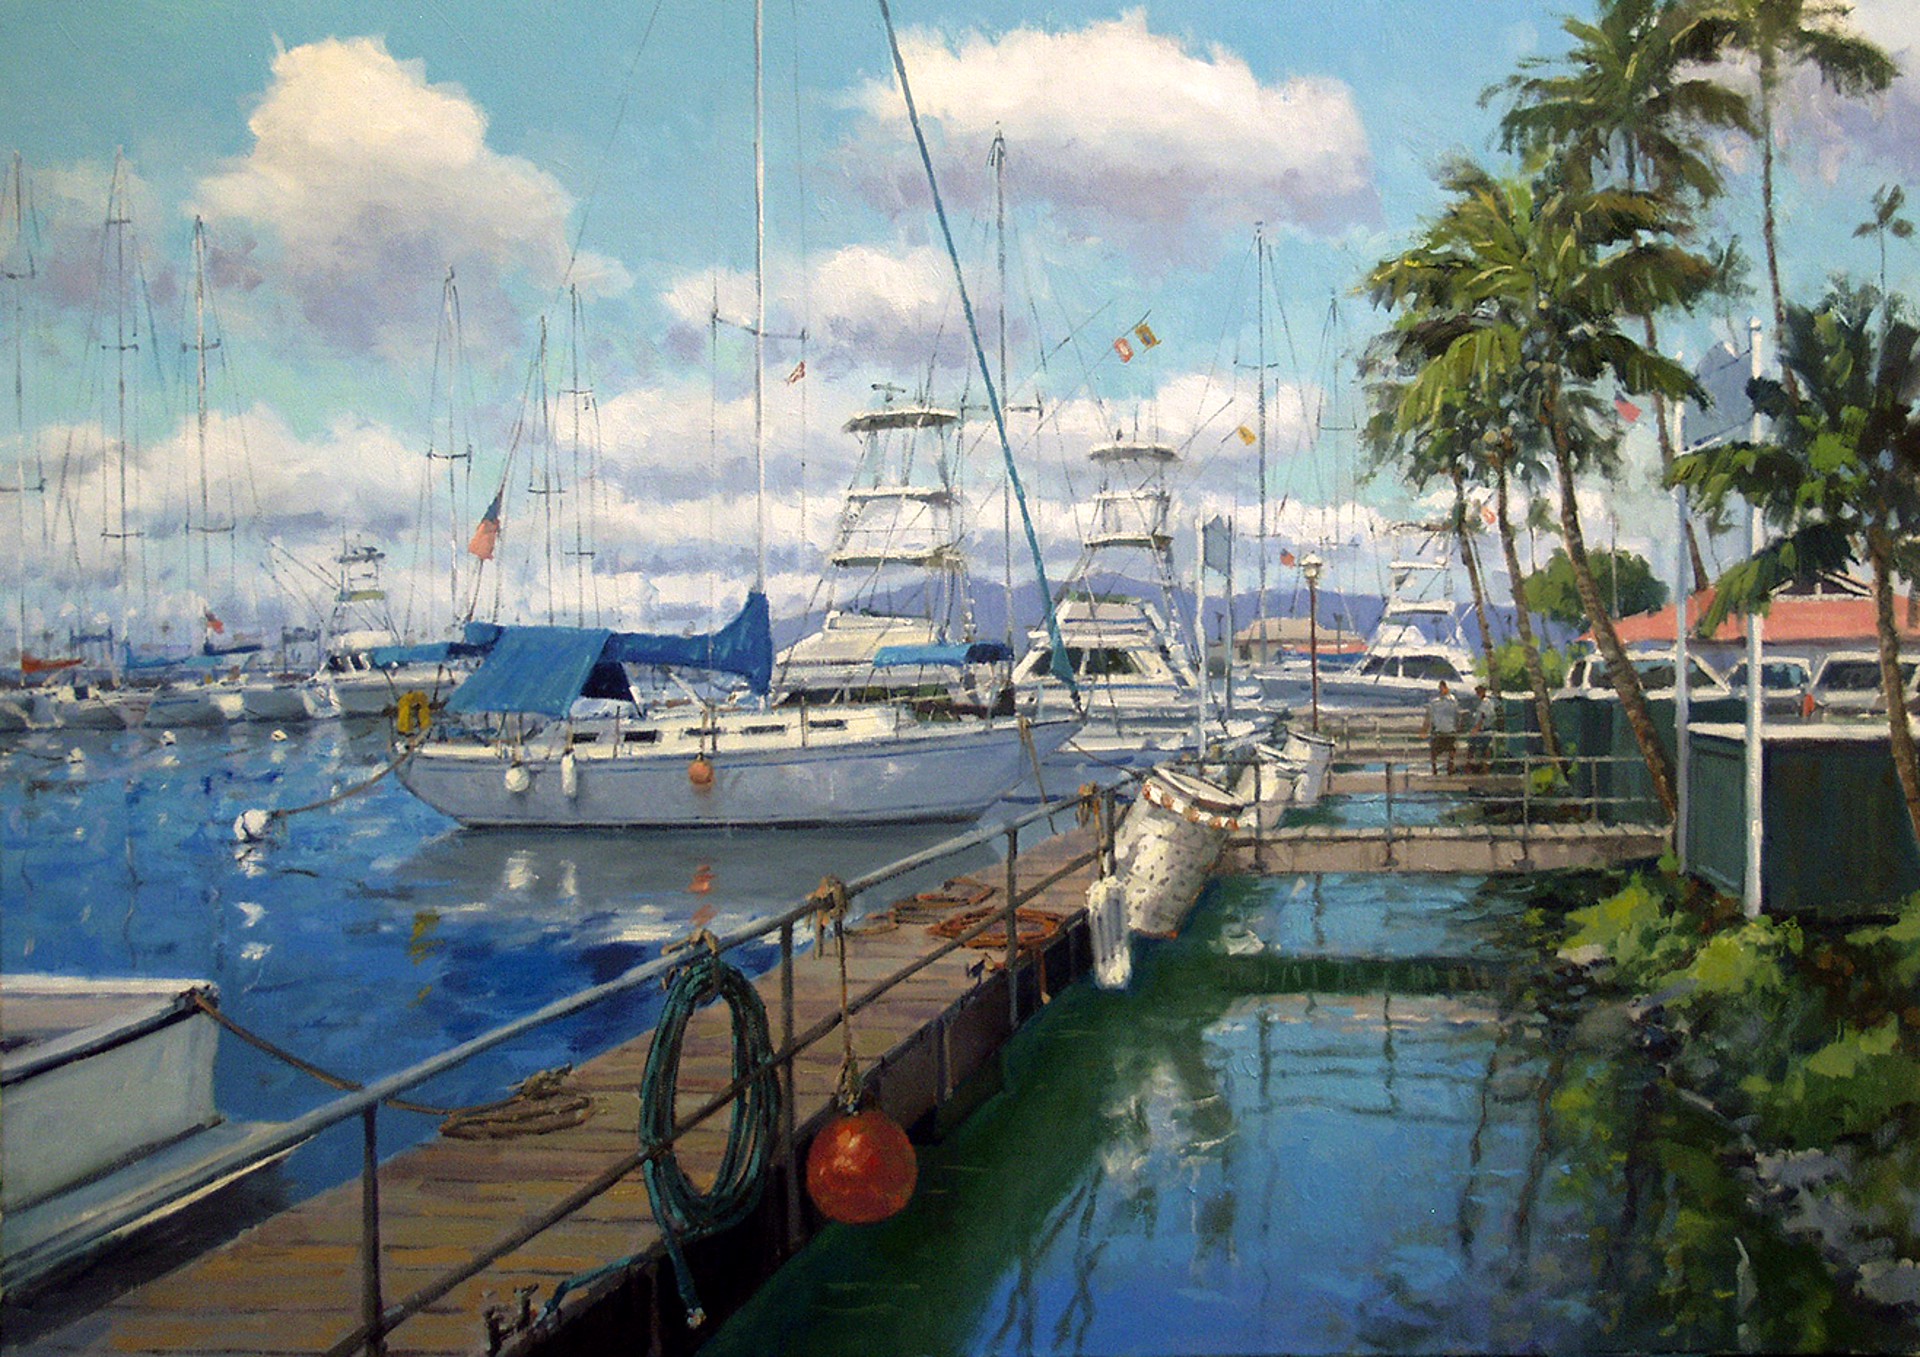 Lahaina Perfection - Lahaina Harbor by Ronaldo Macedo